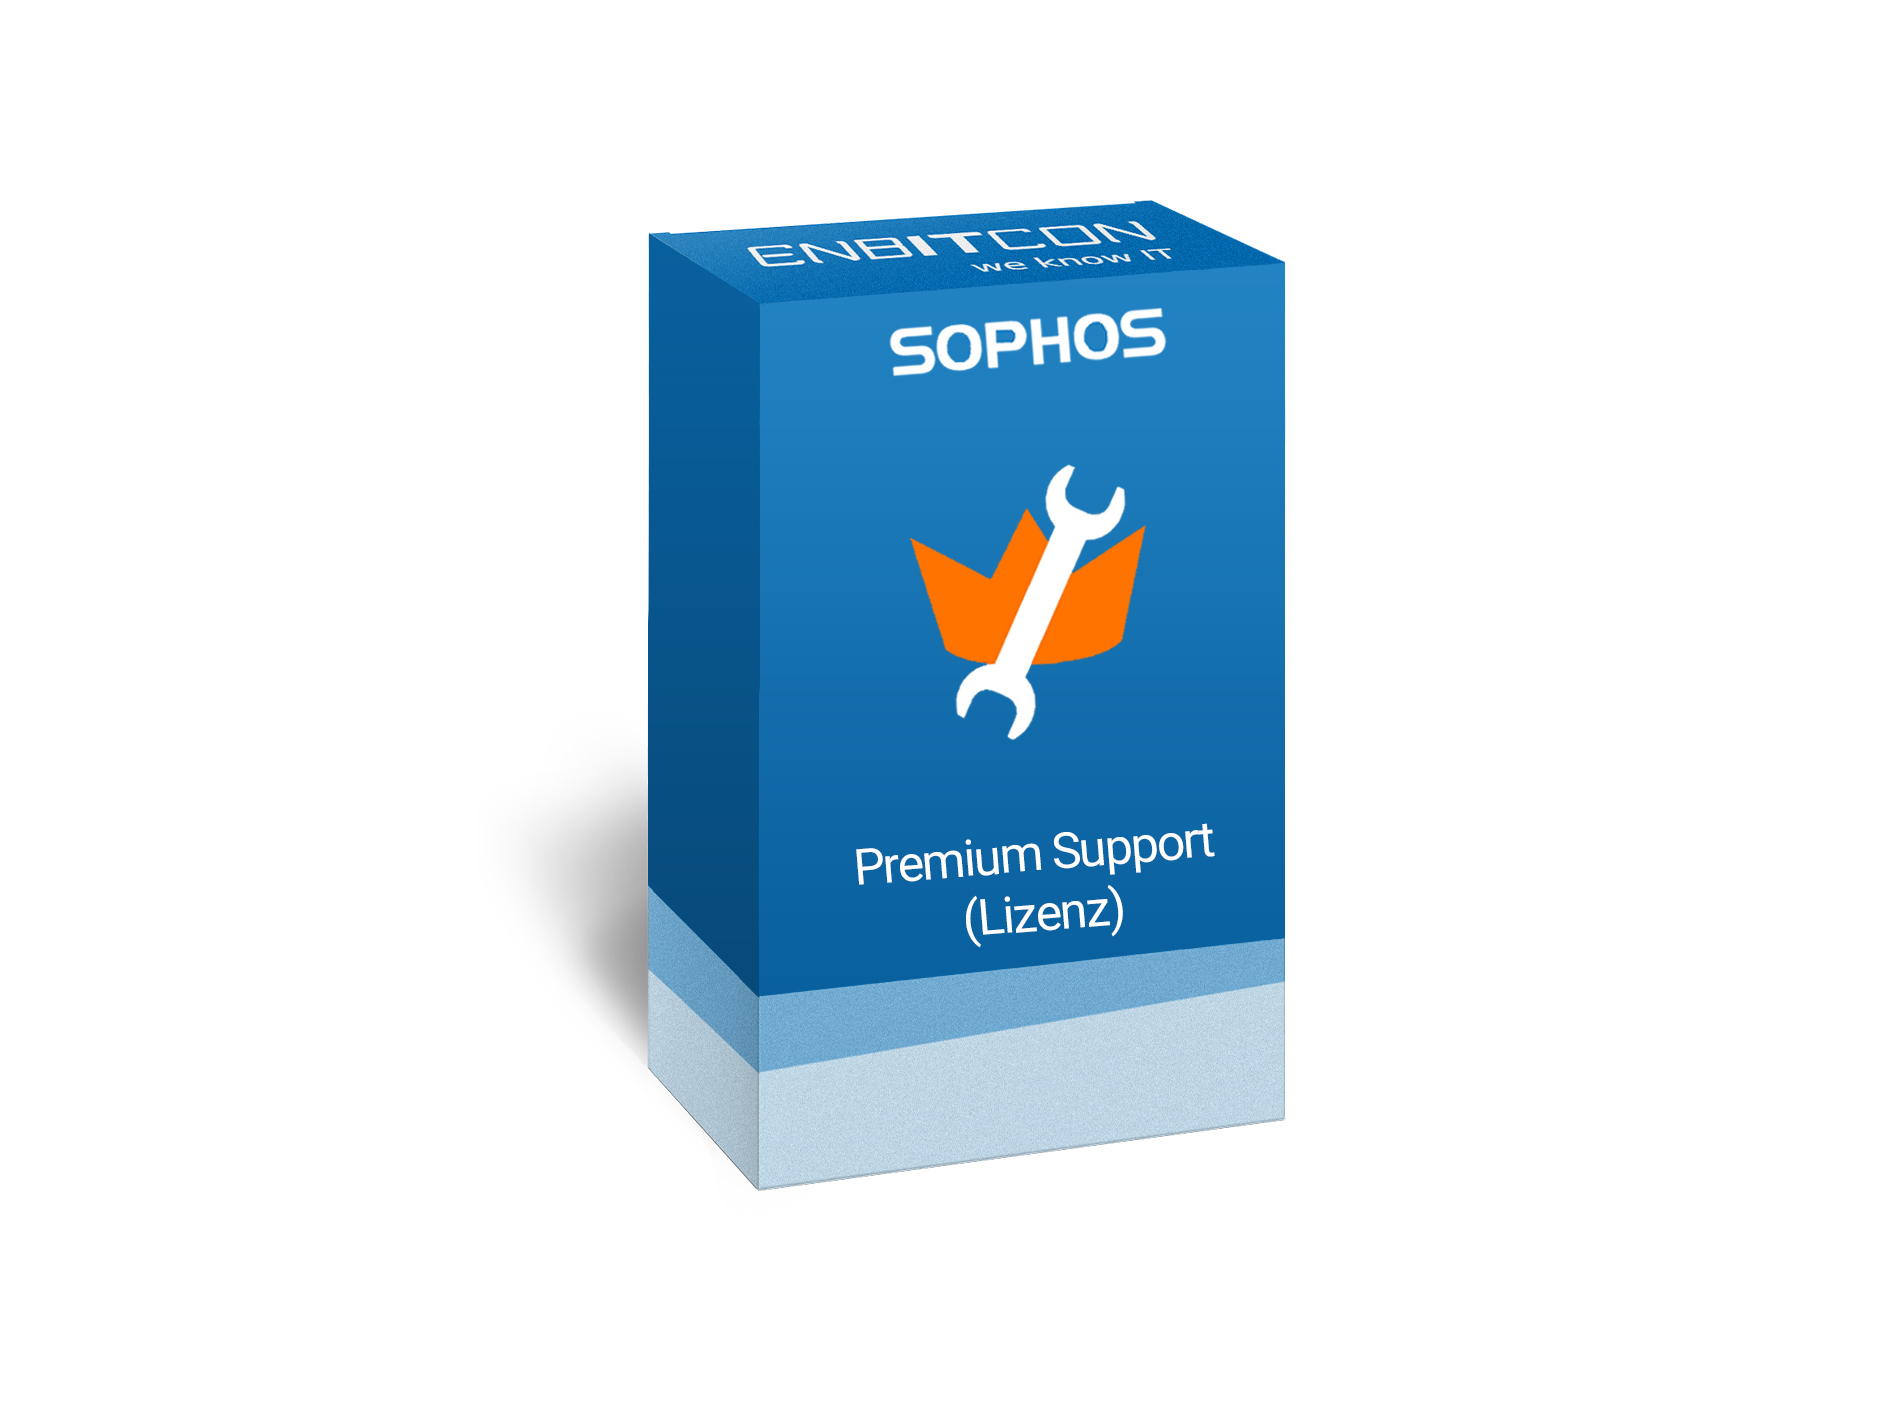 Sophos Premium Support Lizenz Vorschaubild bestehend aus einem blauen Schild, indem sich ein orangener Schraubenschlüssel befindet